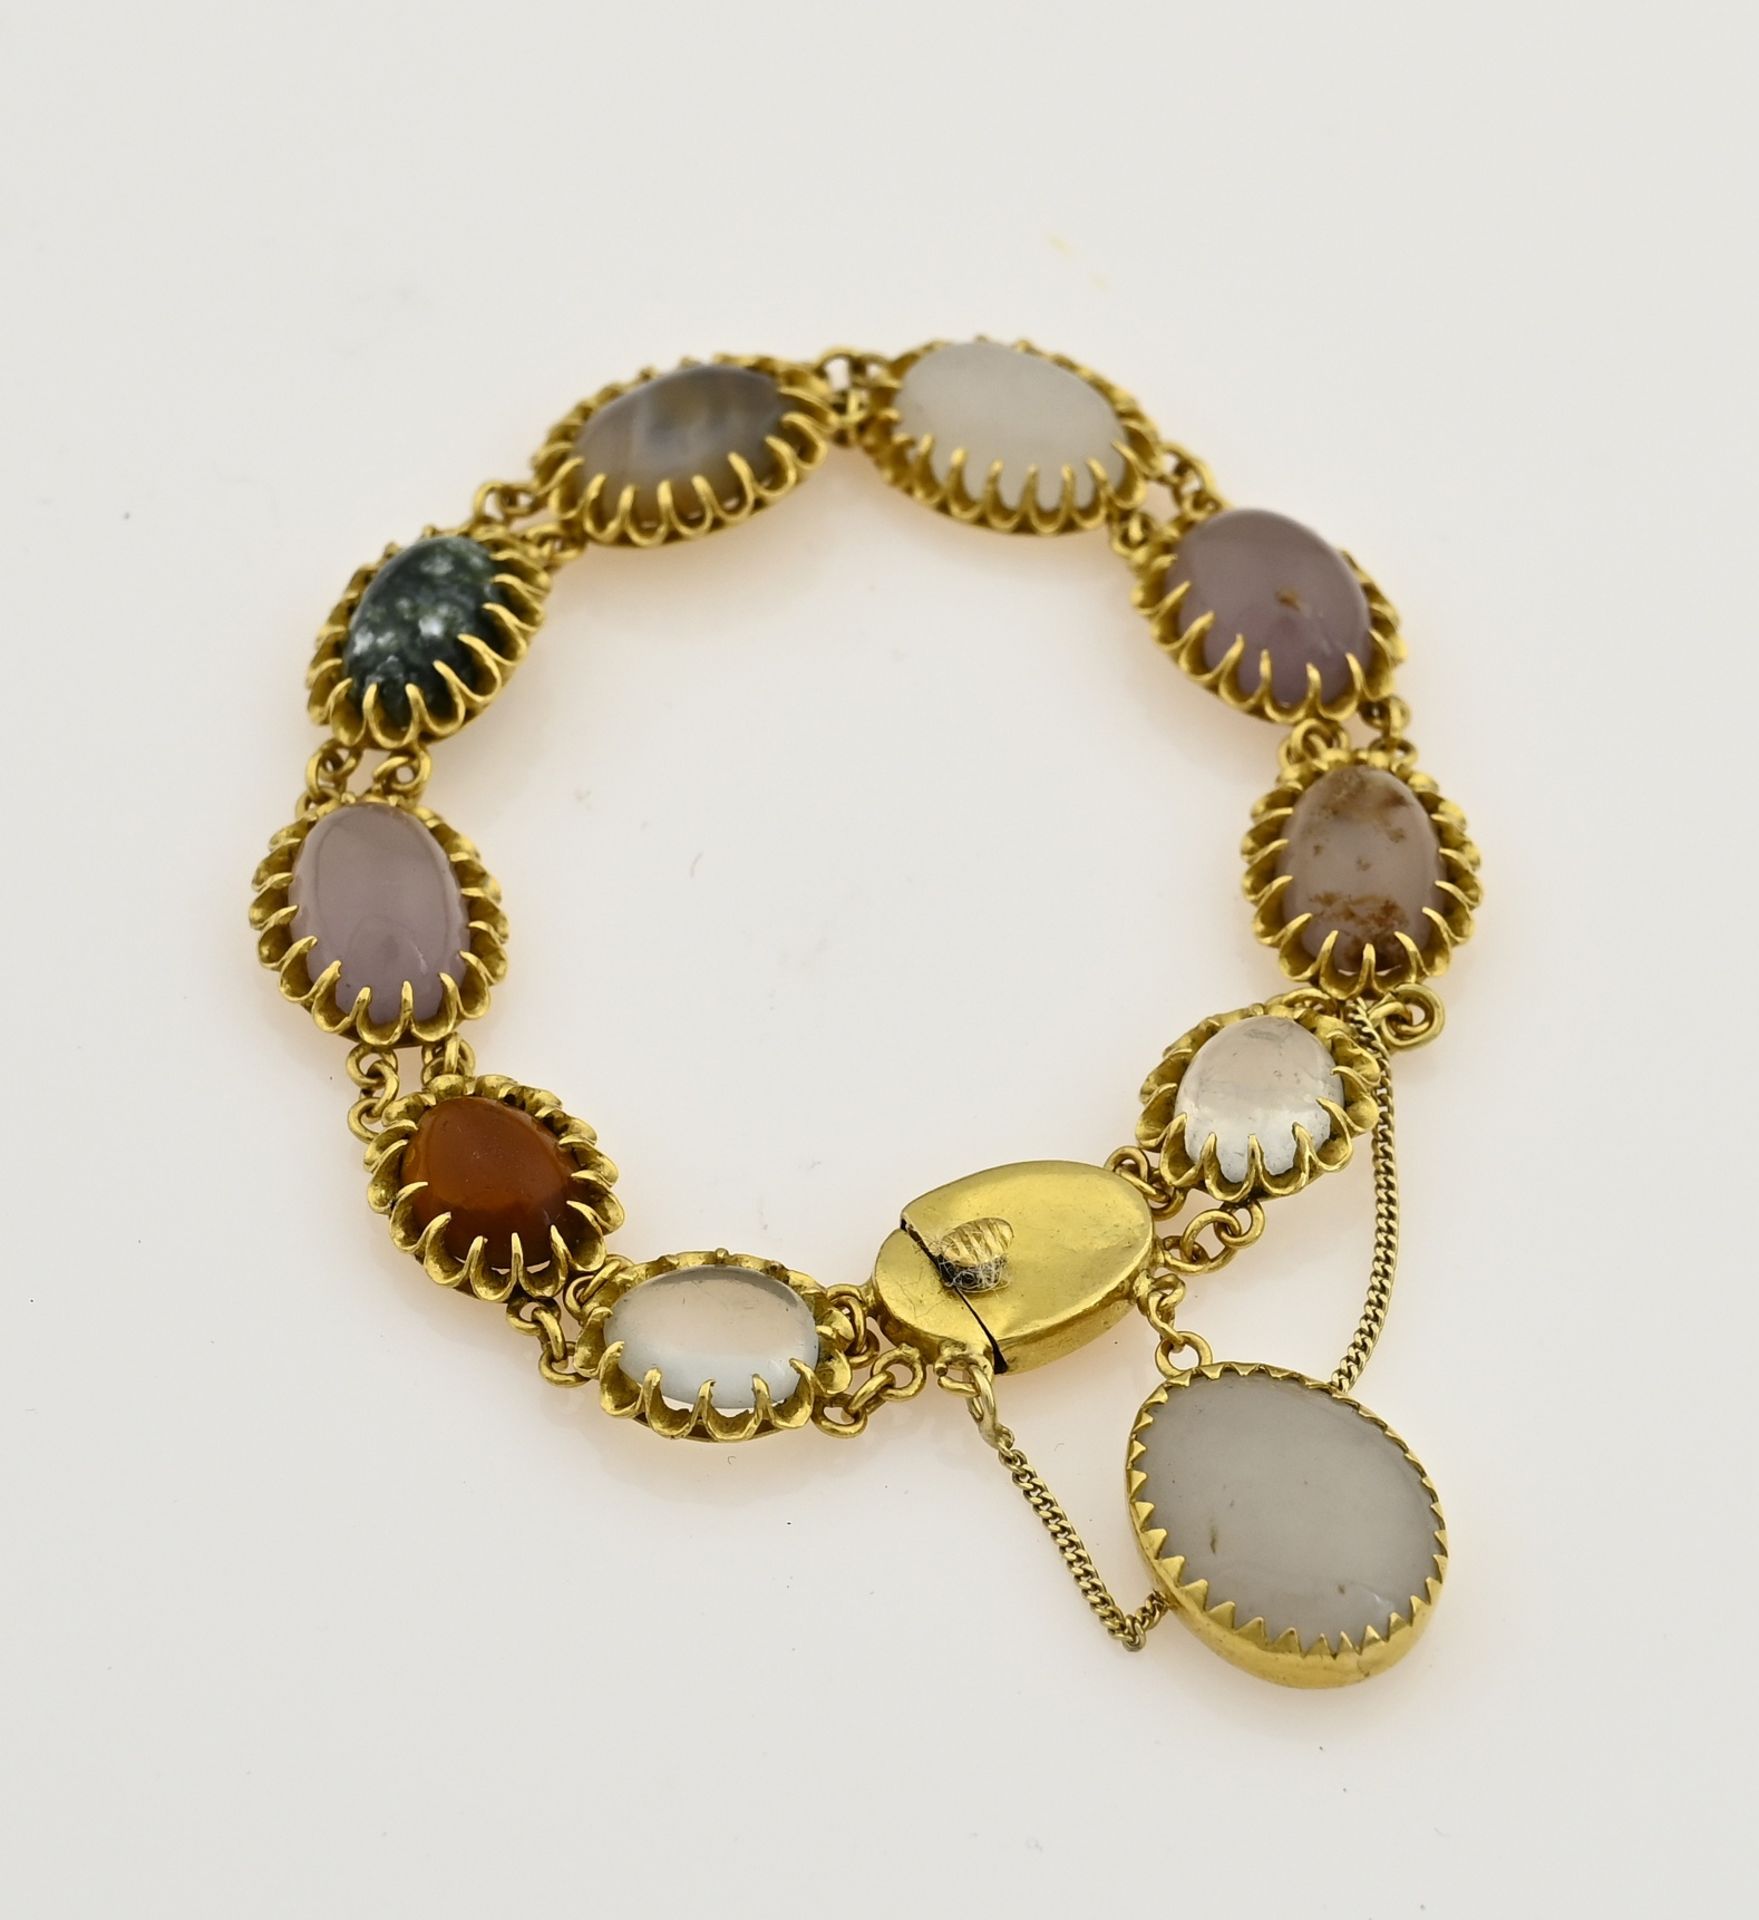 Gold bracelet with gemstones